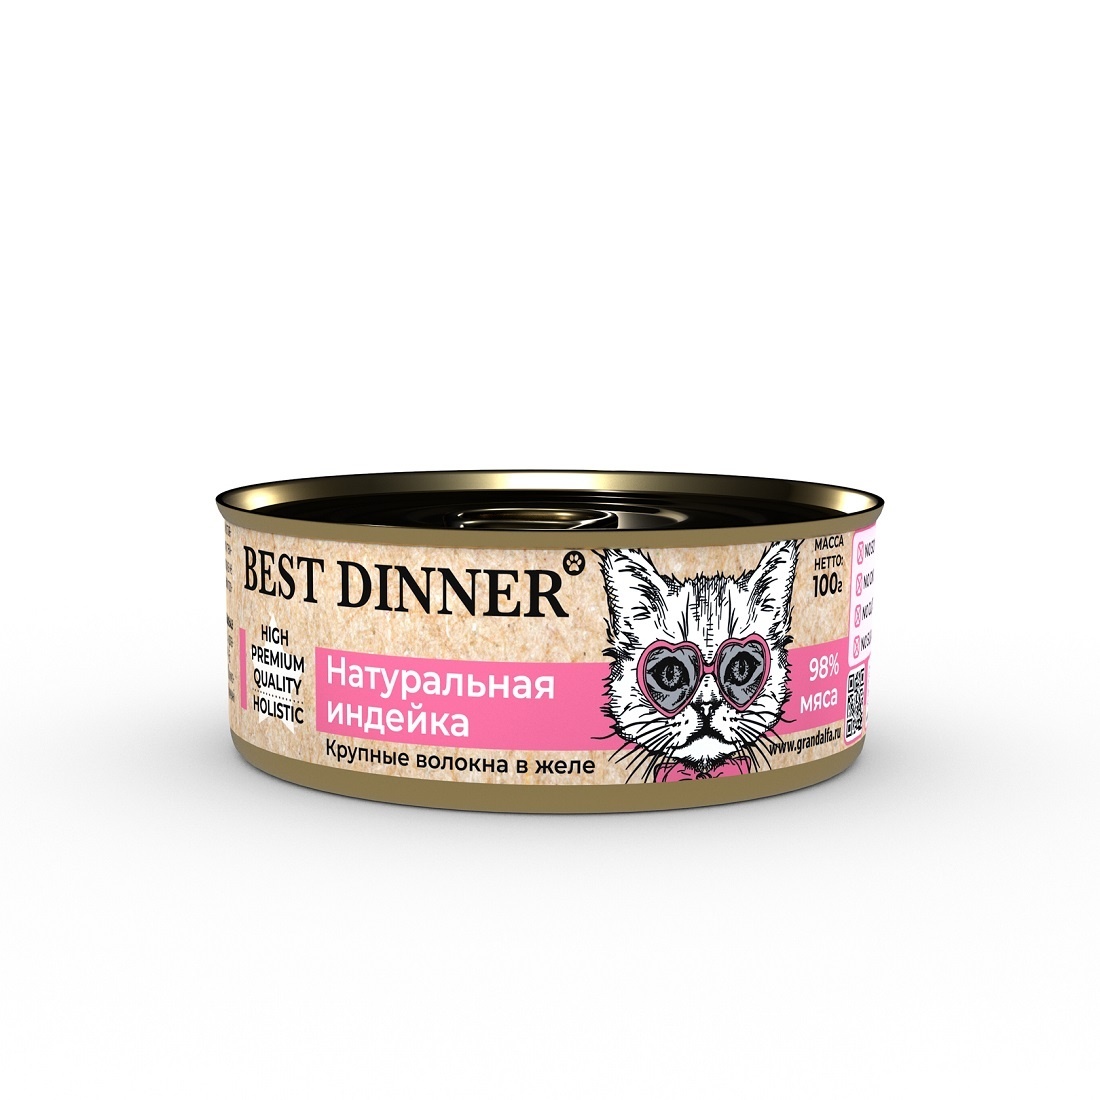 Best Dinner Best Dinner консервы для кошек в желе Натуральная индейка (100 г) best dinner best dinner гипоаллергенные консервы индейка и кролик для собак всех пород 340 г